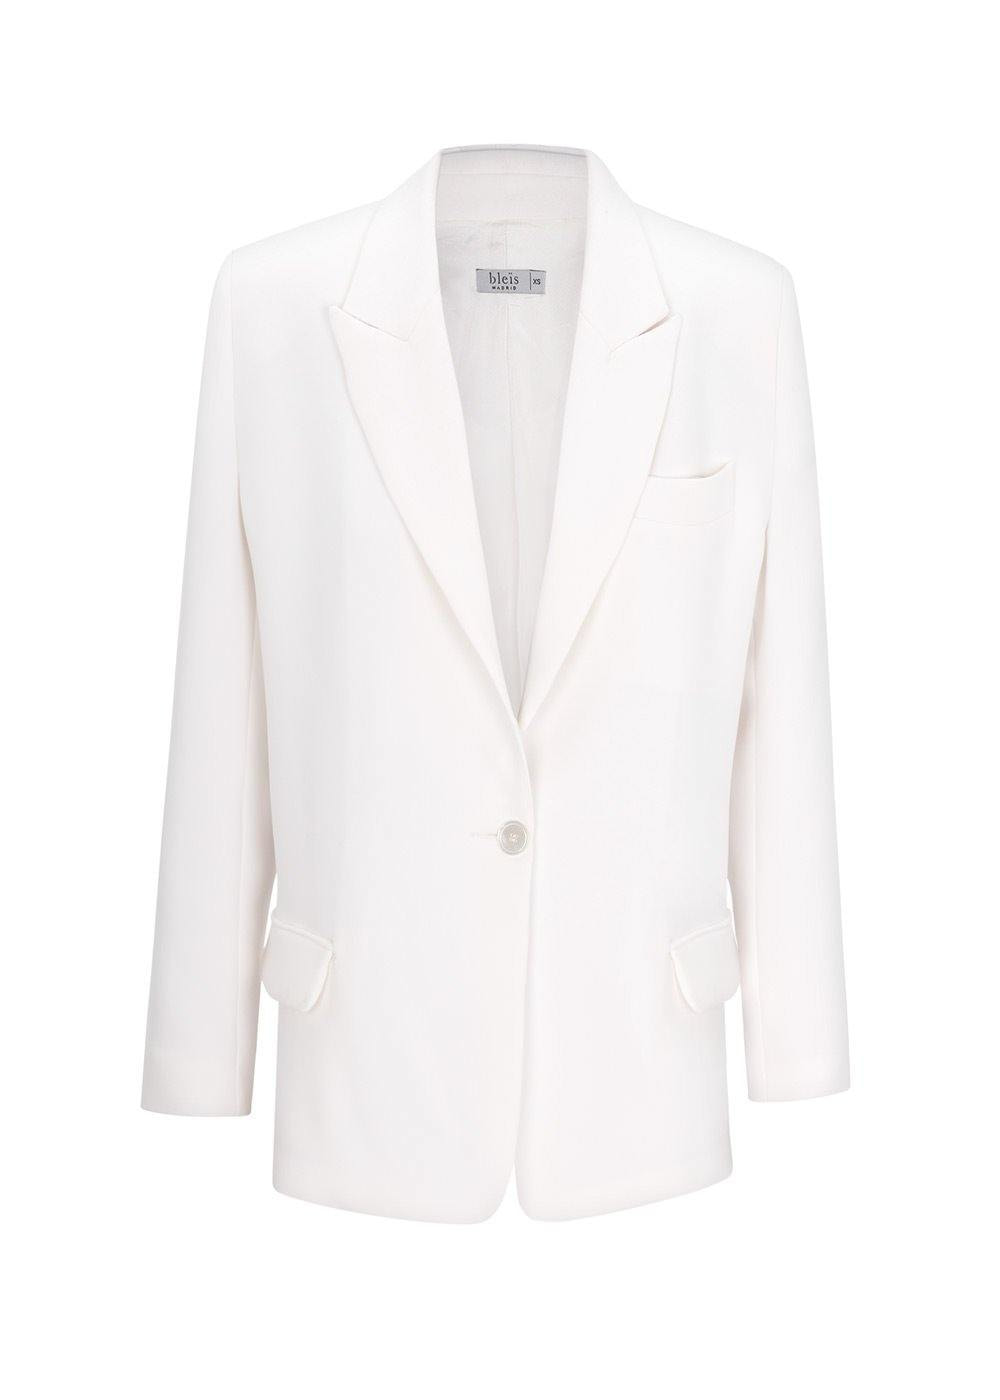 Bleis Madrid crepe blazer in white